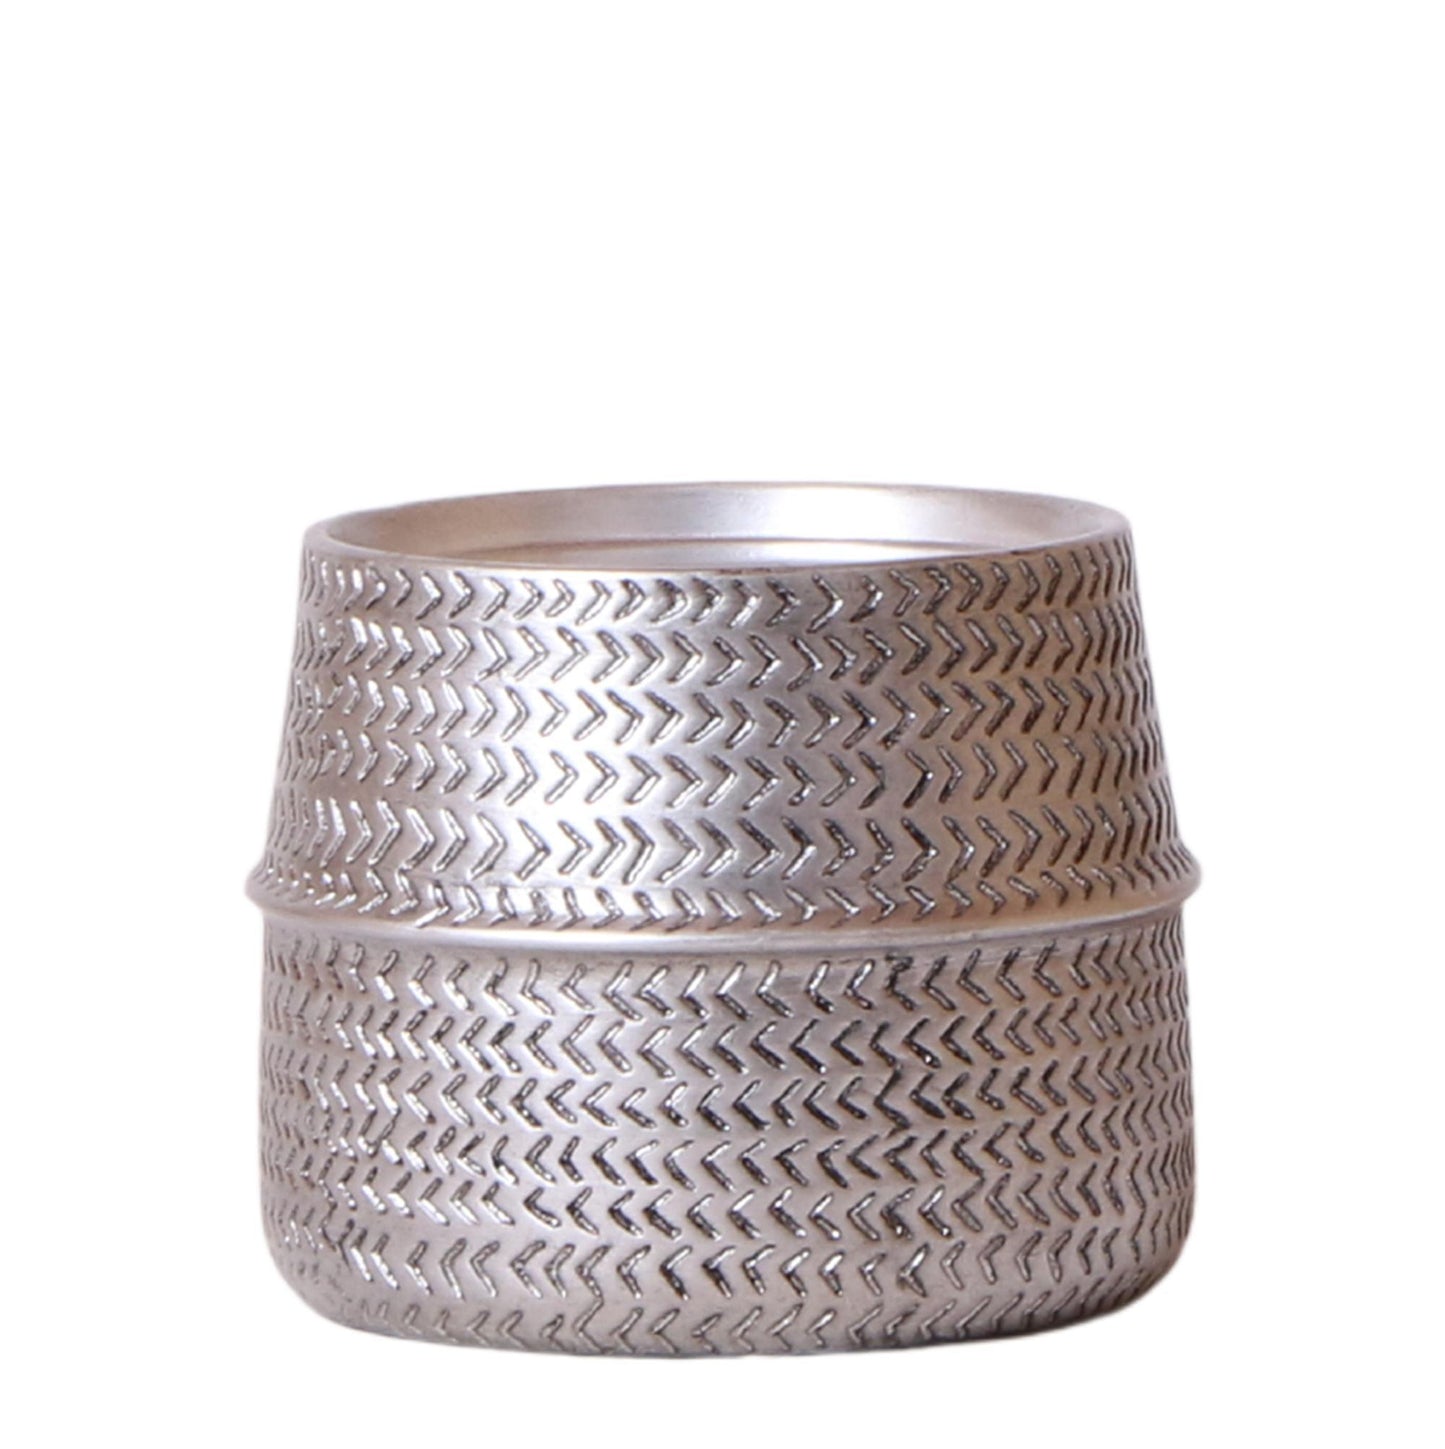 Kolibri Home | Groove bloempot - Zilveren keramieken sierpot - potmaat Ø9cm